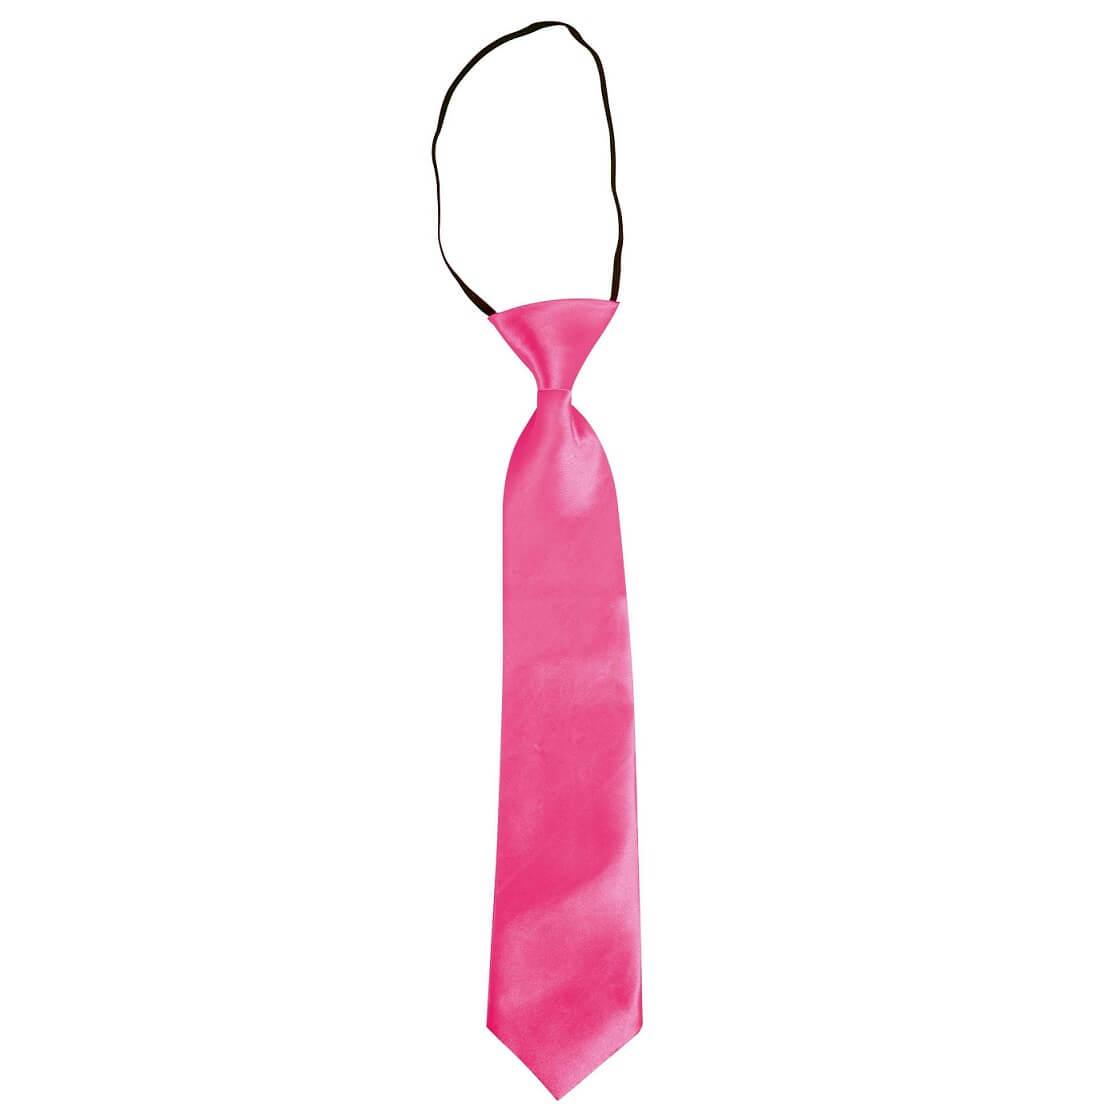 https://www.events-tour.com/medias/images/21162-accessoire-deguisement-cravate-rose-fluo.jpg